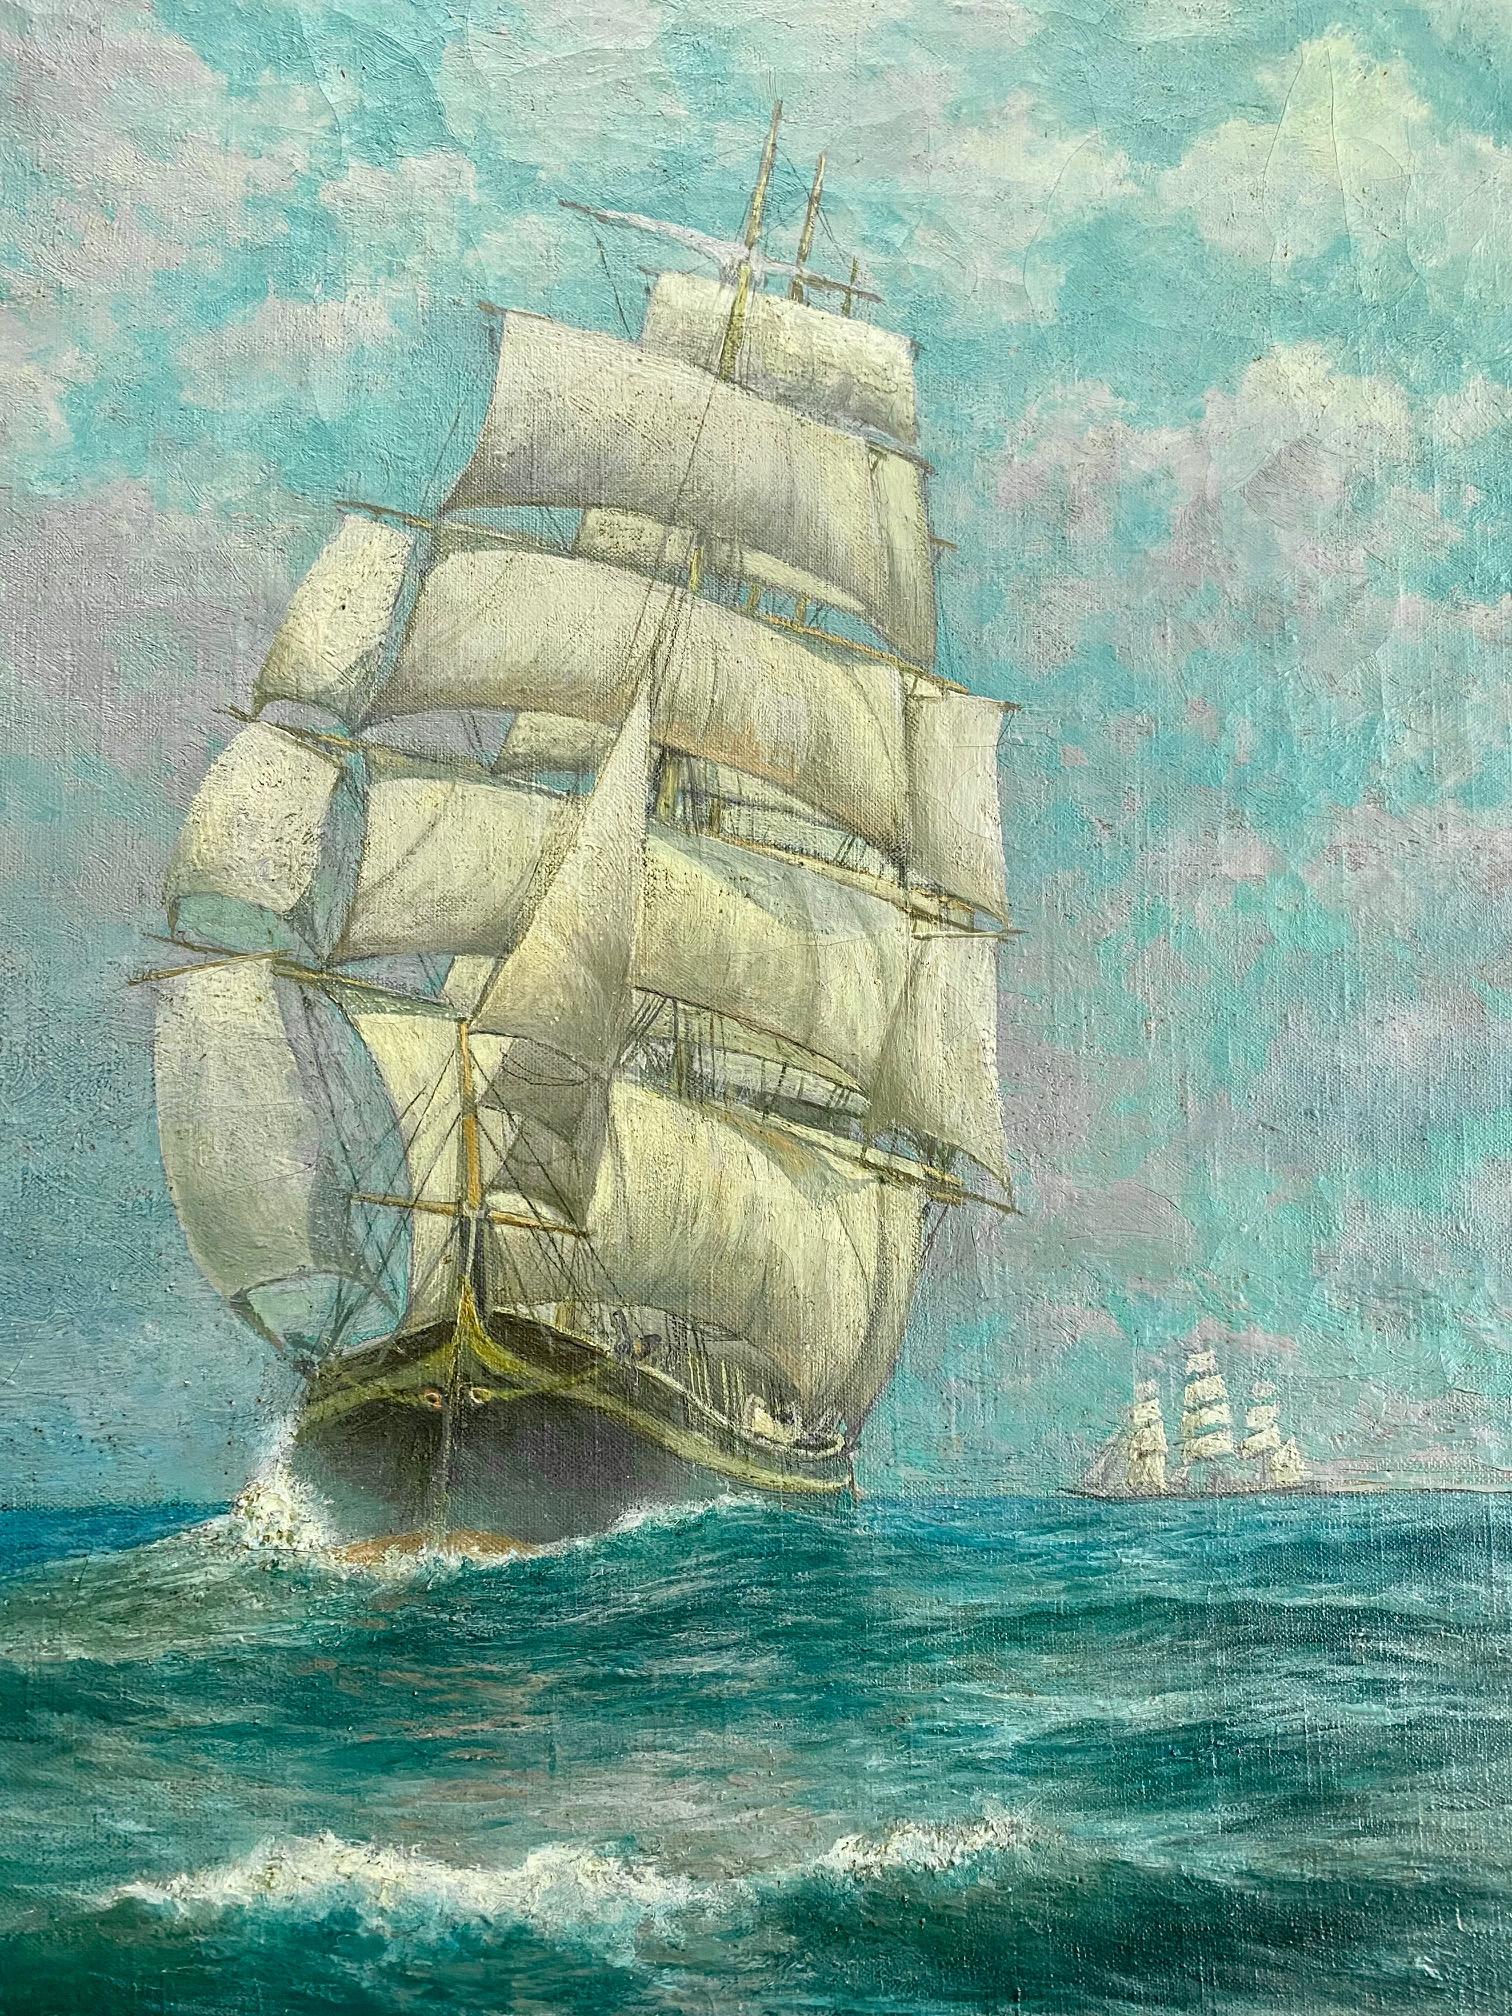 Seascape with Clippership par George Howell Gay (Américain : 1858 - 1931), vers 1890, une huile sur toile représentant la proue d'un clippership à pleines voiles, courant avec des étoupes et des voiles d'étrave, sur une mer animée sous un ciel bleu